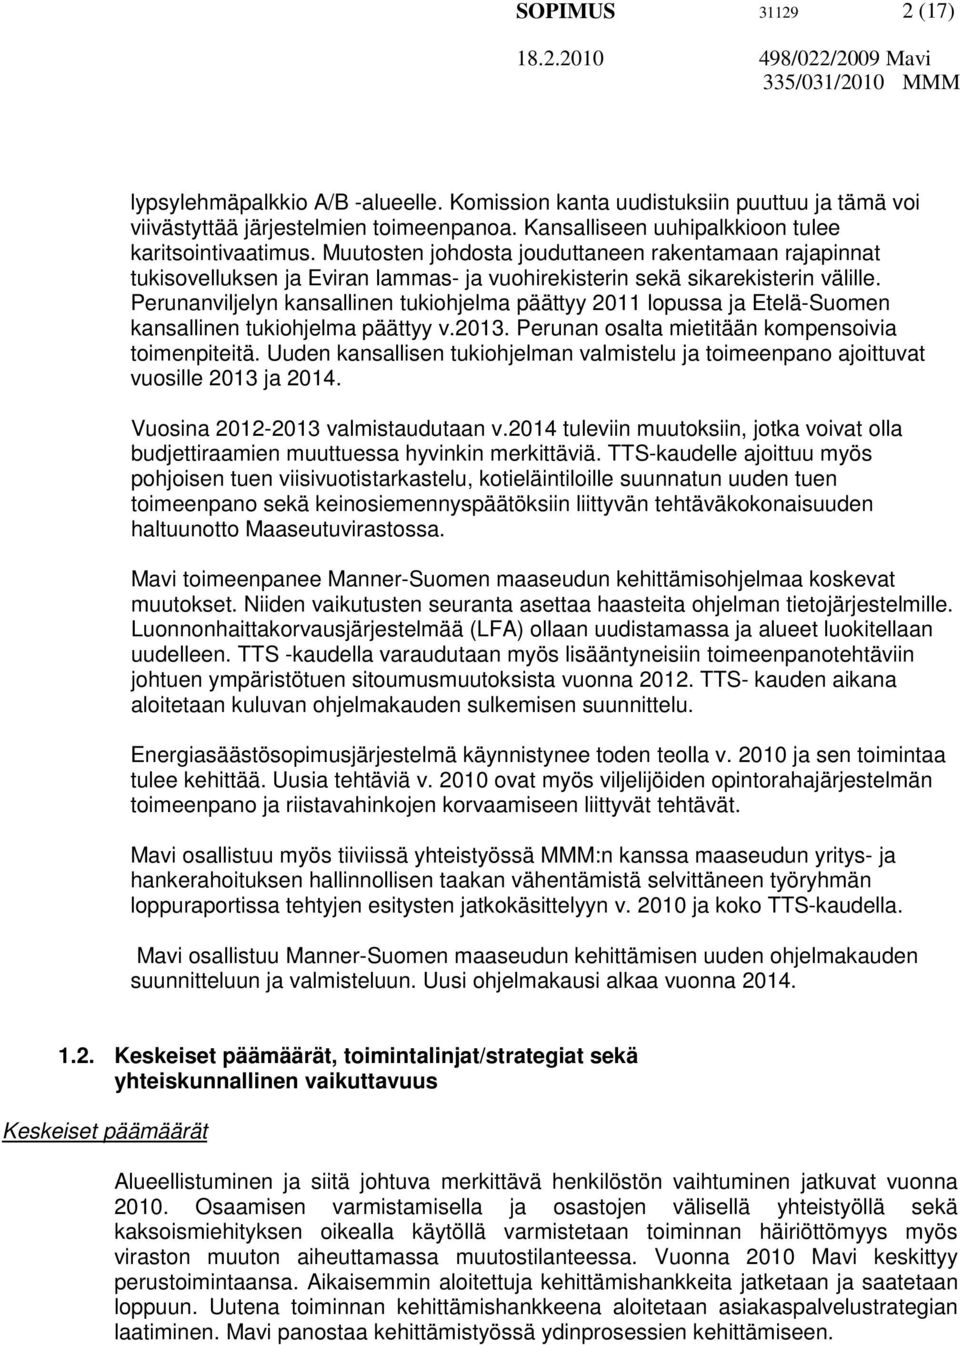 Perunanviljelyn kansallinen tukiohjelma päättyy 2011 lopussa ja Etelä-Suomen kansallinen tukiohjelma päättyy v.2013. Perunan osalta mietitään kompensoivia toimenpiteitä.